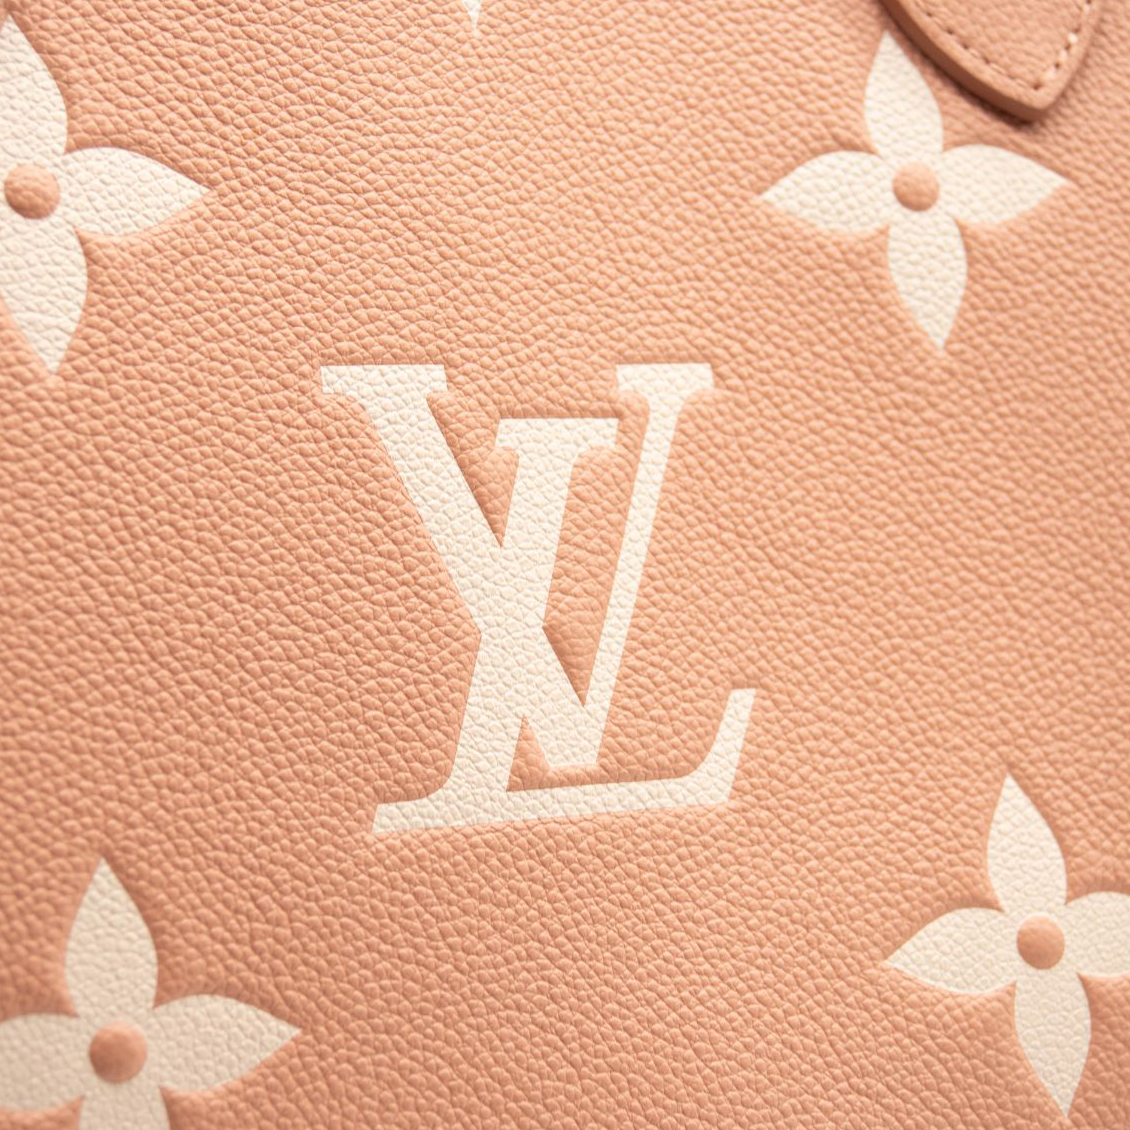 Louis Vuitton Onthego MM Trianon Pink/Cream